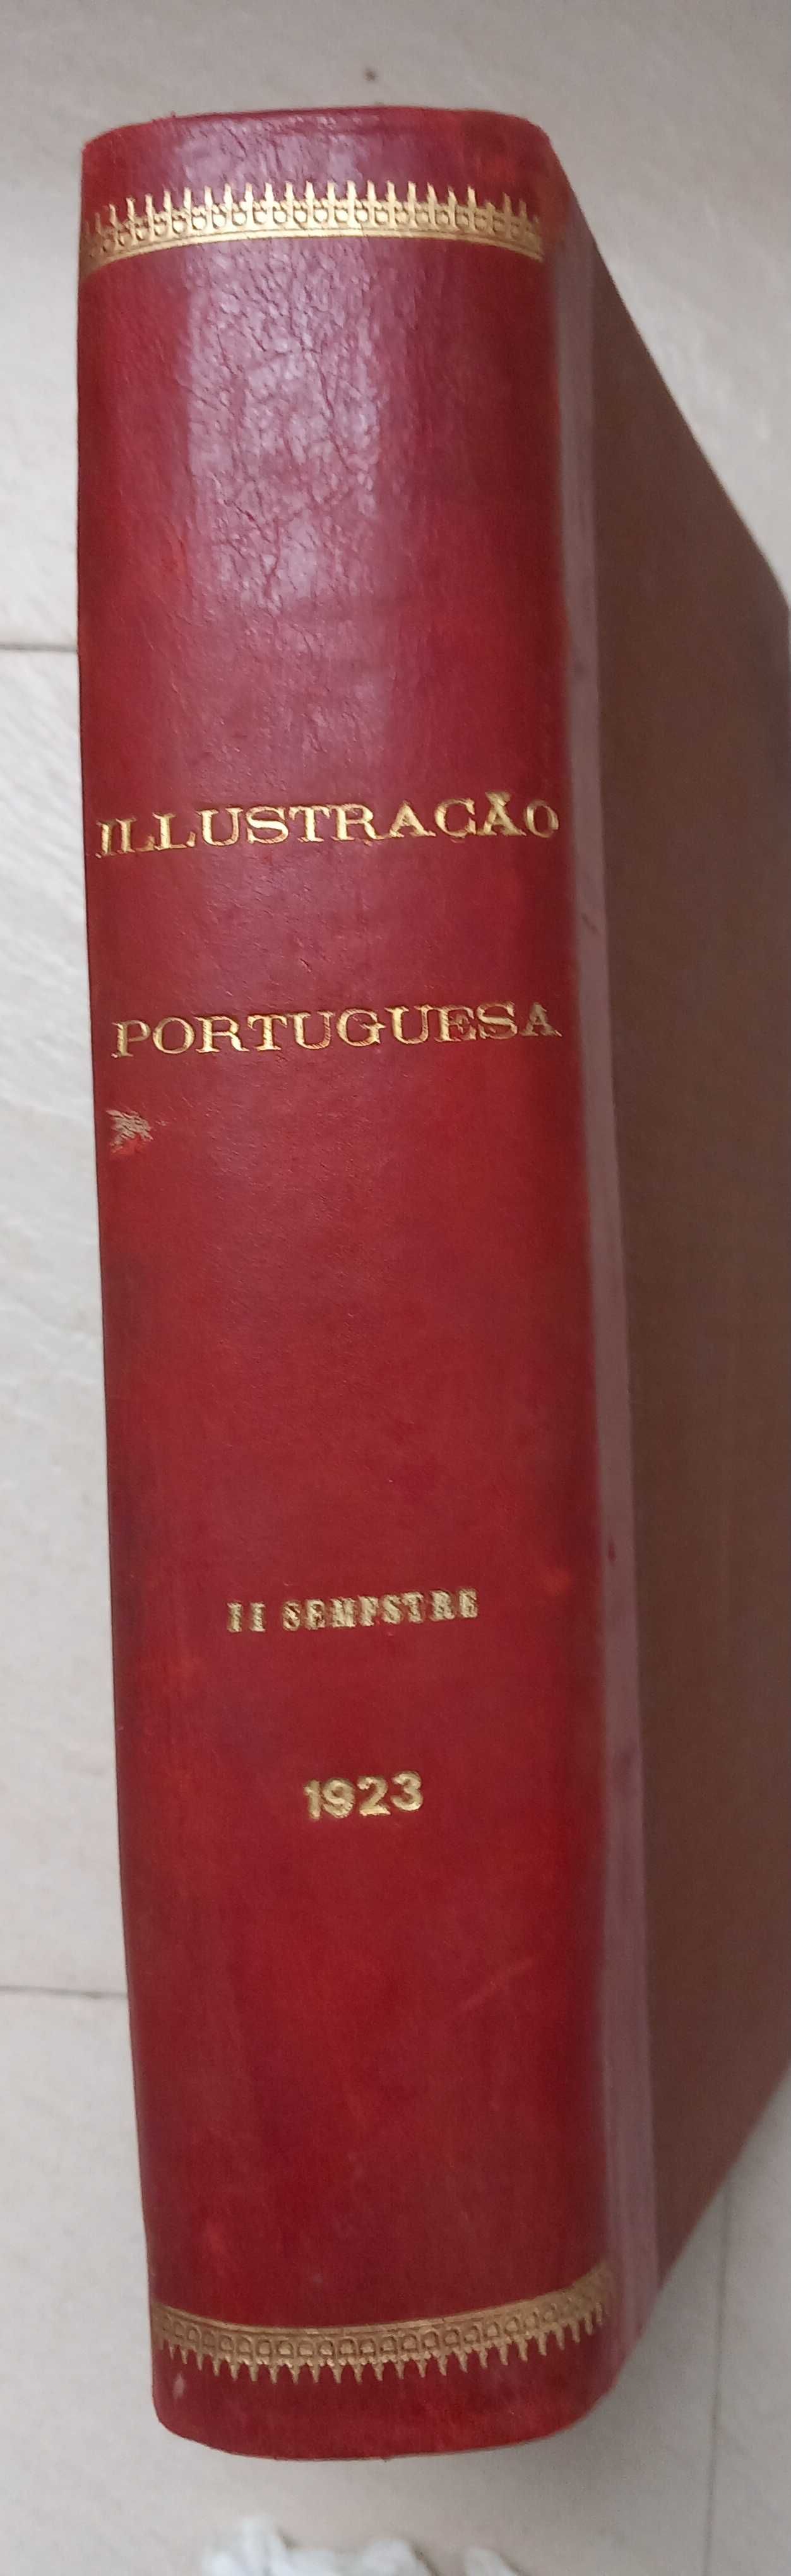 Ilustração portuguesa